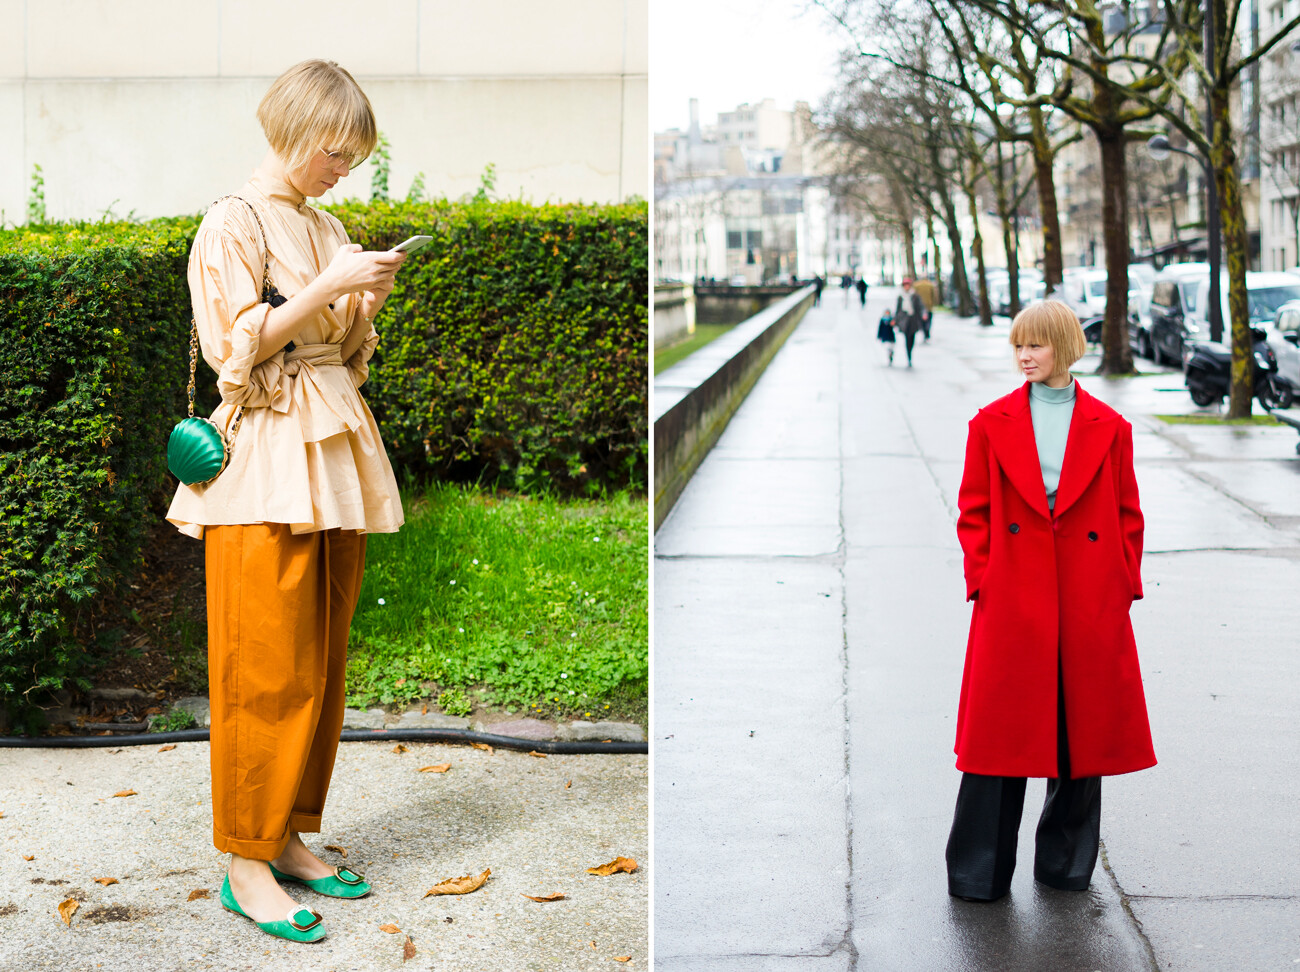 A sinistra: Vika Gazinskaja durante la Settimana della moda di Parigi, 2017. A destra: Vika Gazinskaja con cappotto rosso, 2018